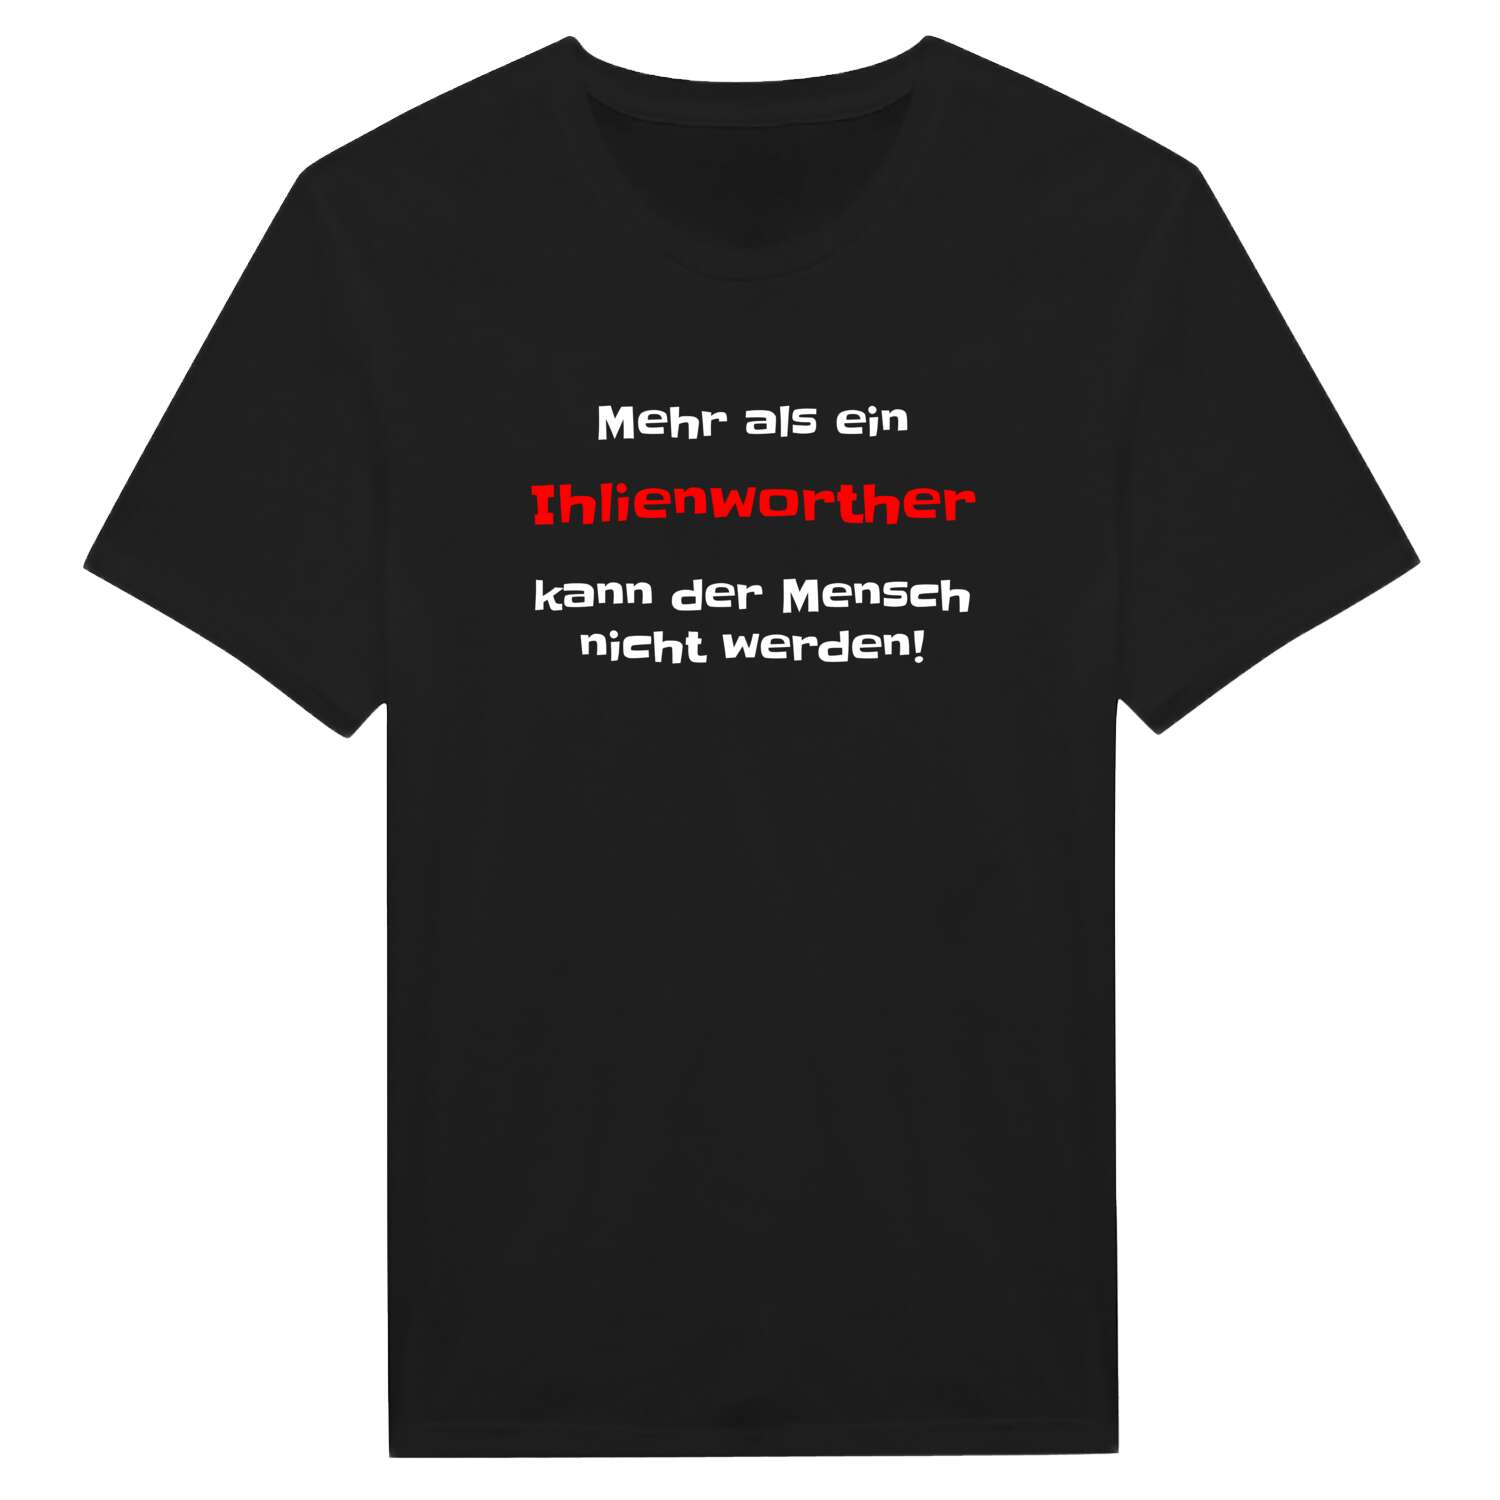 Ihlienworth T-Shirt »Mehr als ein«